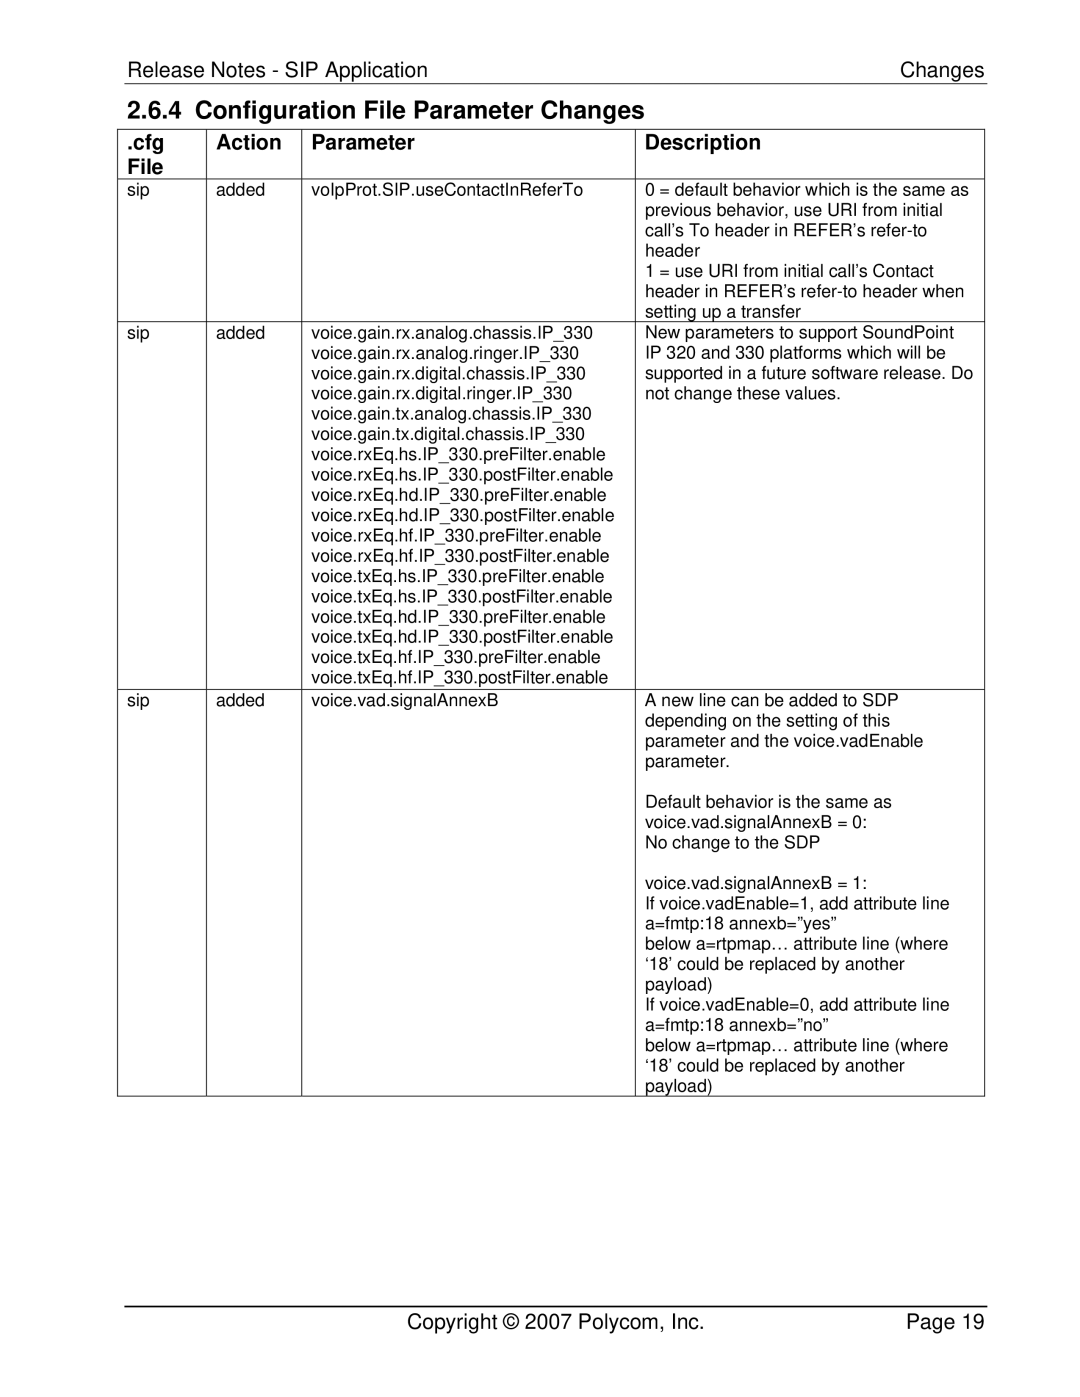 Polycom 3804-11530-222 manual Cfg Action Parameter Description File 